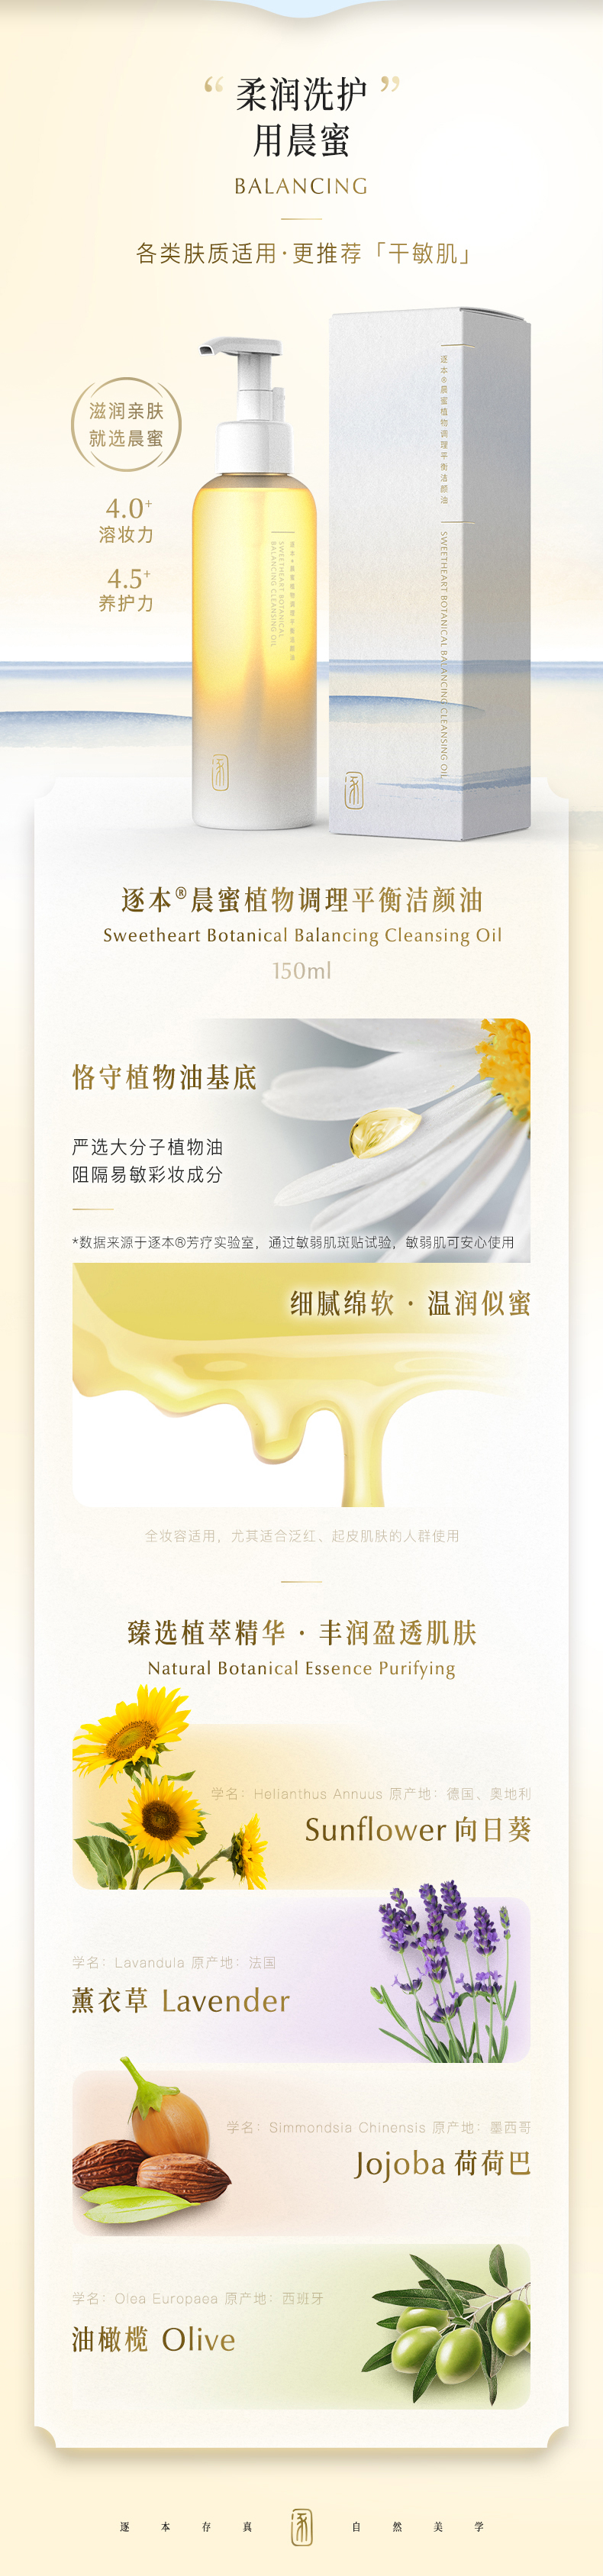 化妝品品牌策劃設計-逐本卸妝油-杭州品牌策劃設計公司